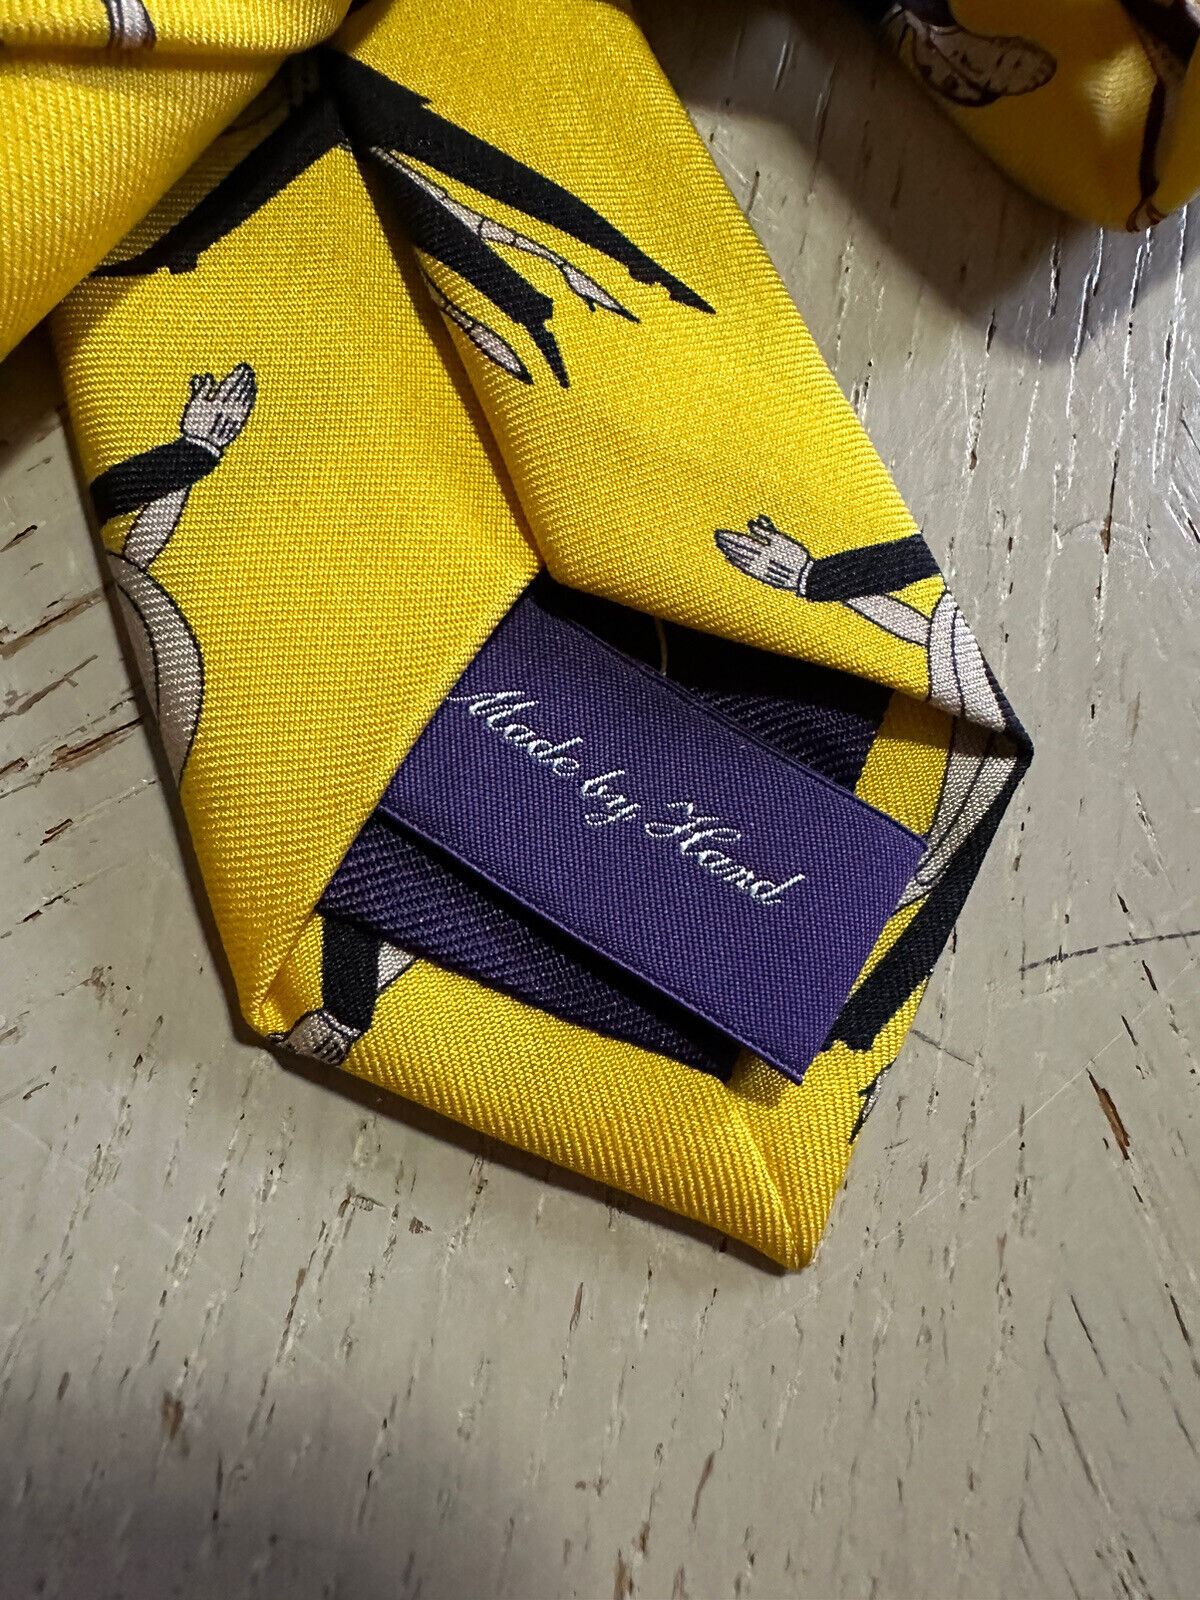 Neu 235 $ Ralph Lauren Purple Label Seidenhalskrawatte Gelb Handgefertigt in Italien